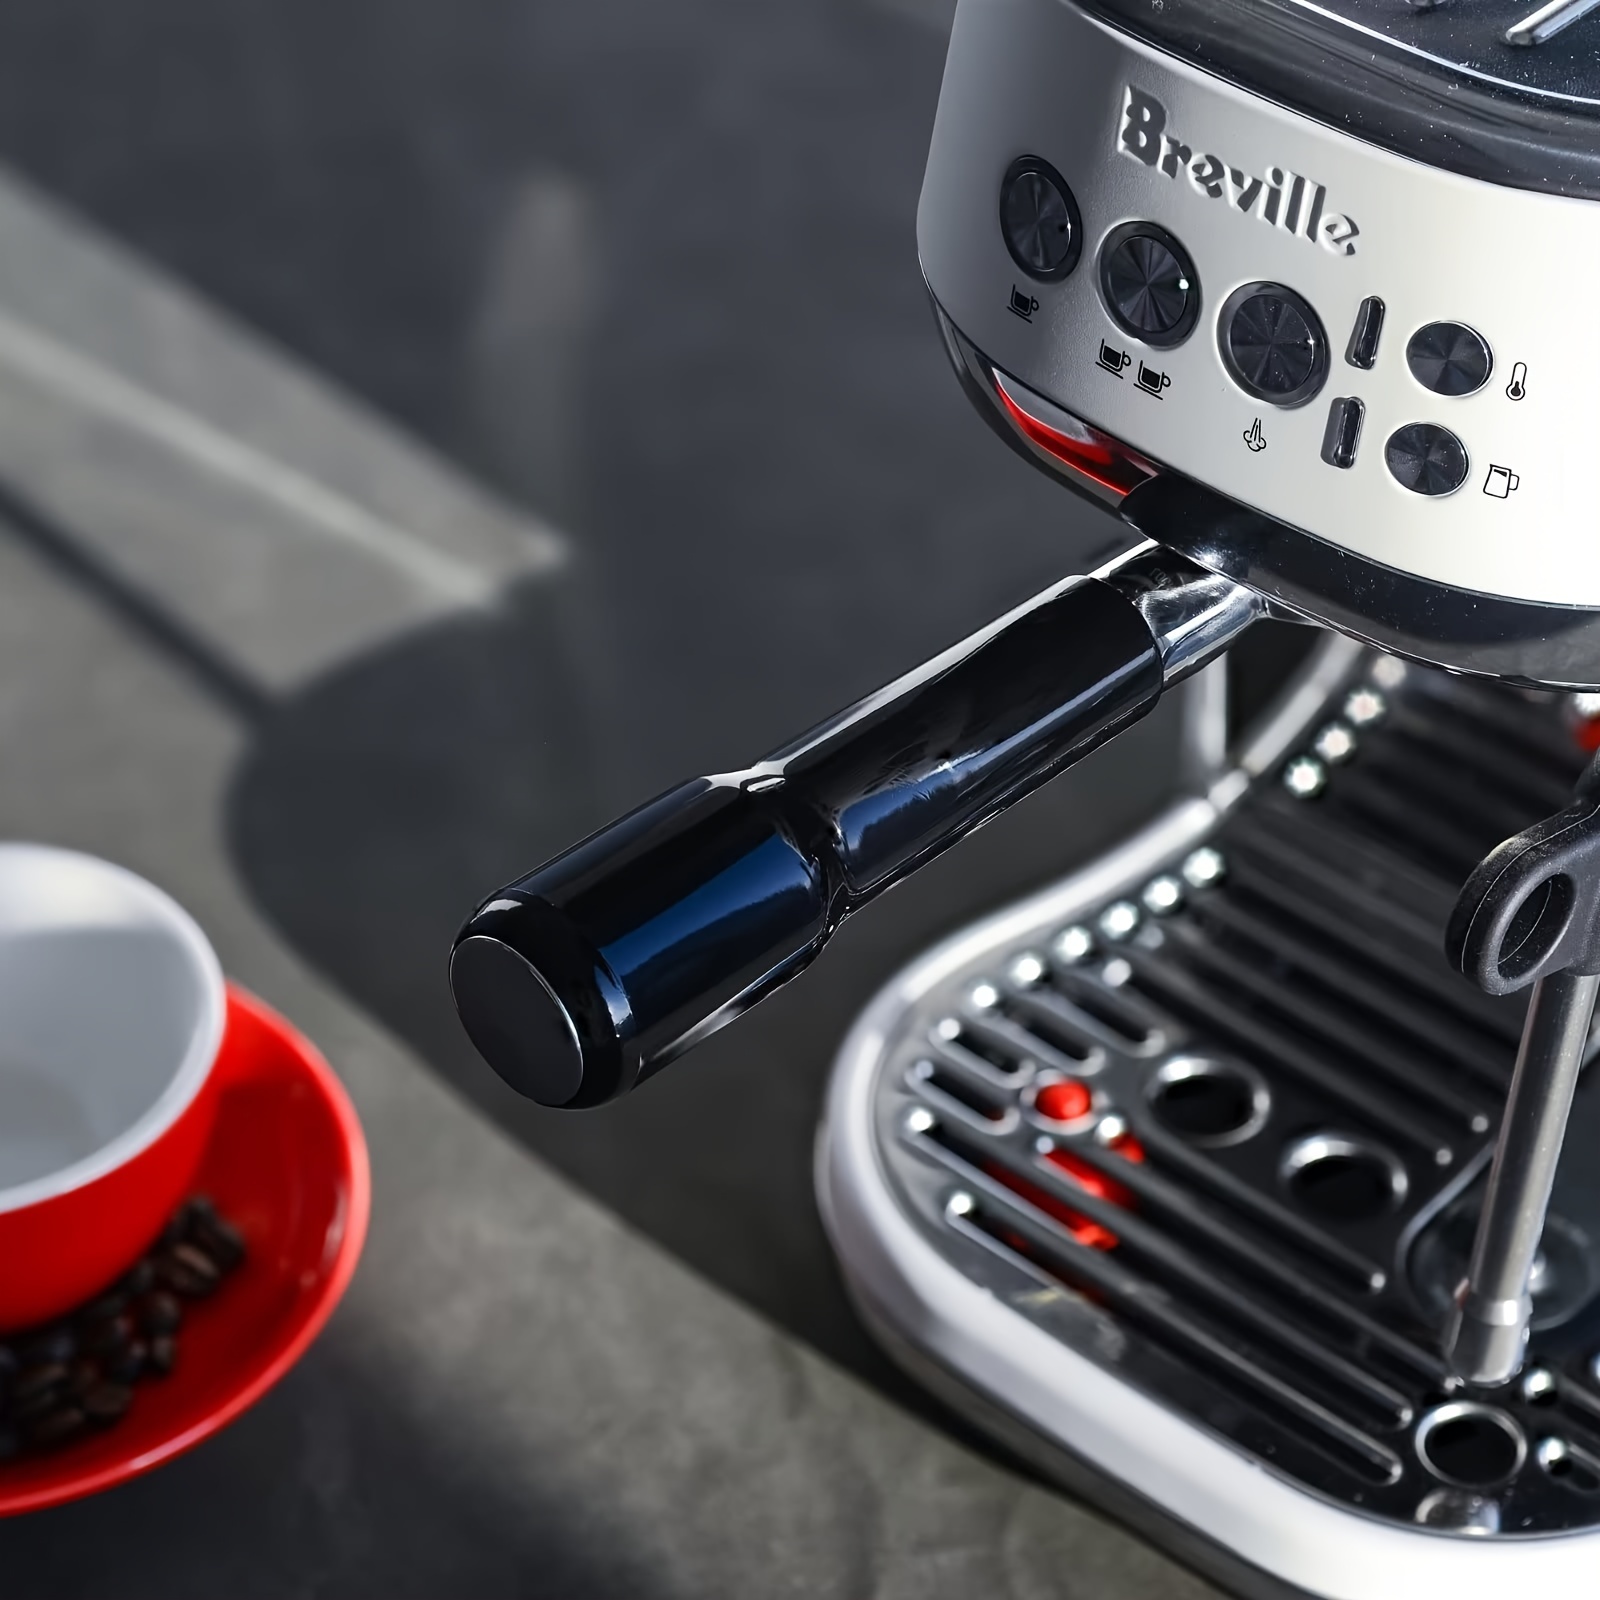 Breville BES878BSS Barista Pro Stainless Steel Espresso Machine w